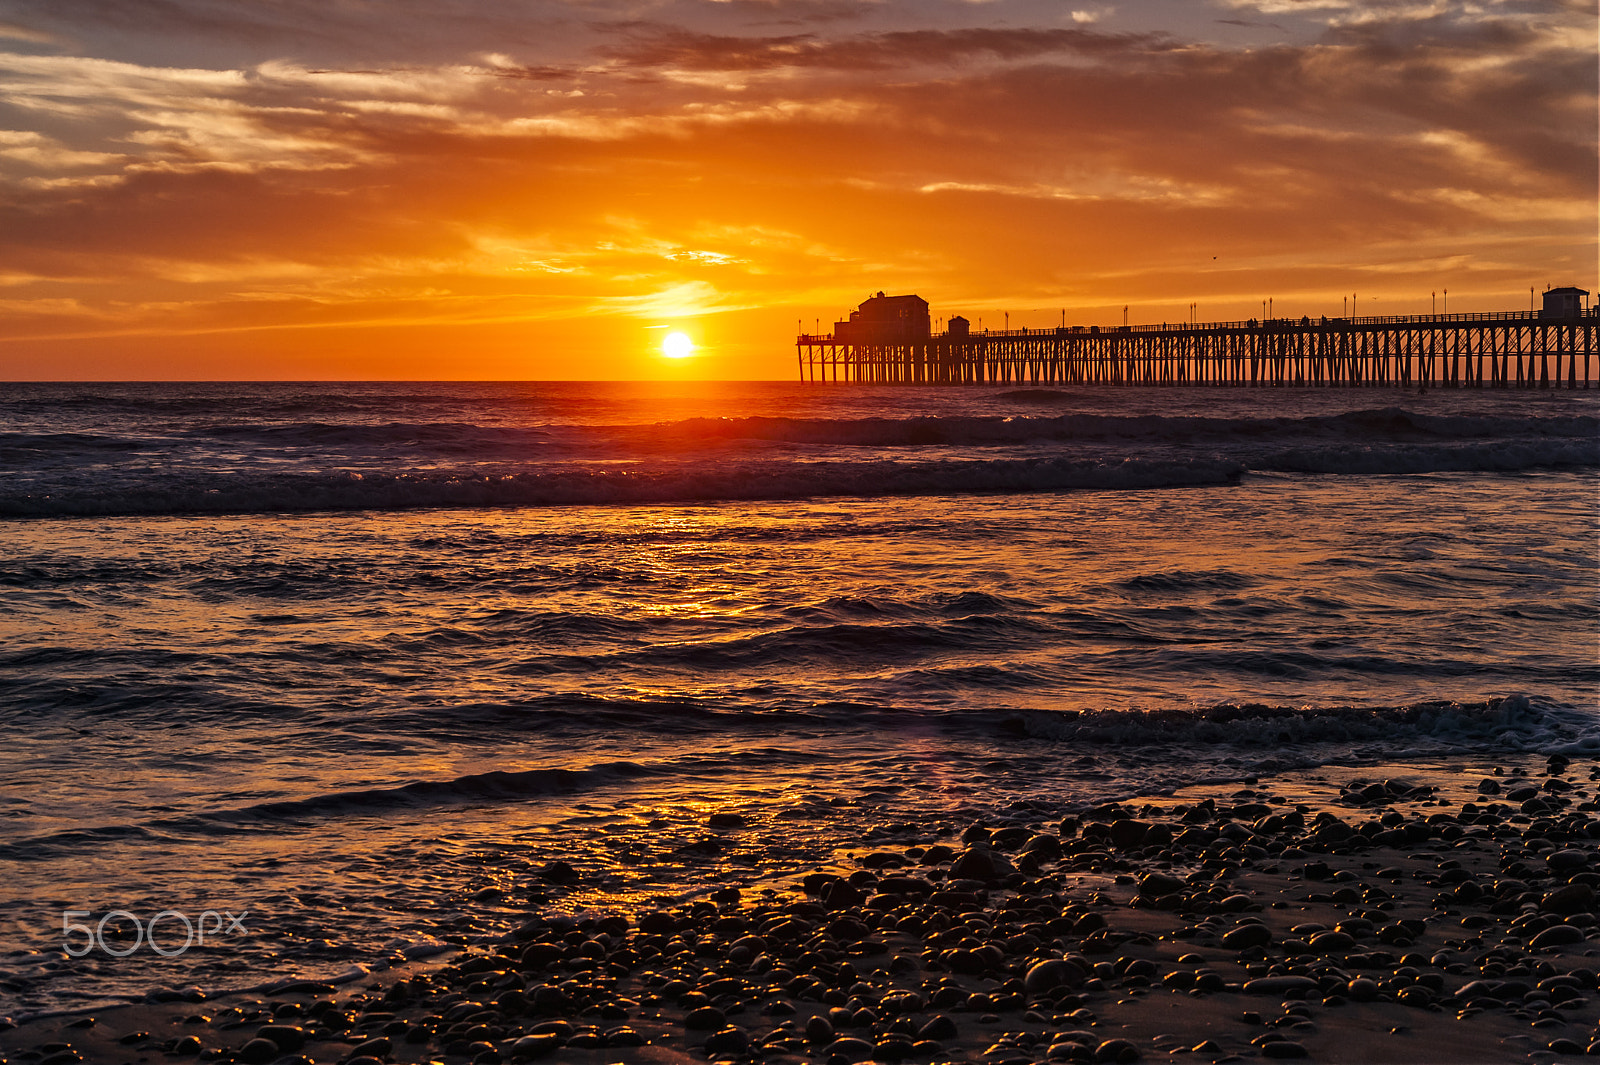 Nikon D700 sample photo. Golden sunset in oceanside - february 15, 2017 photography